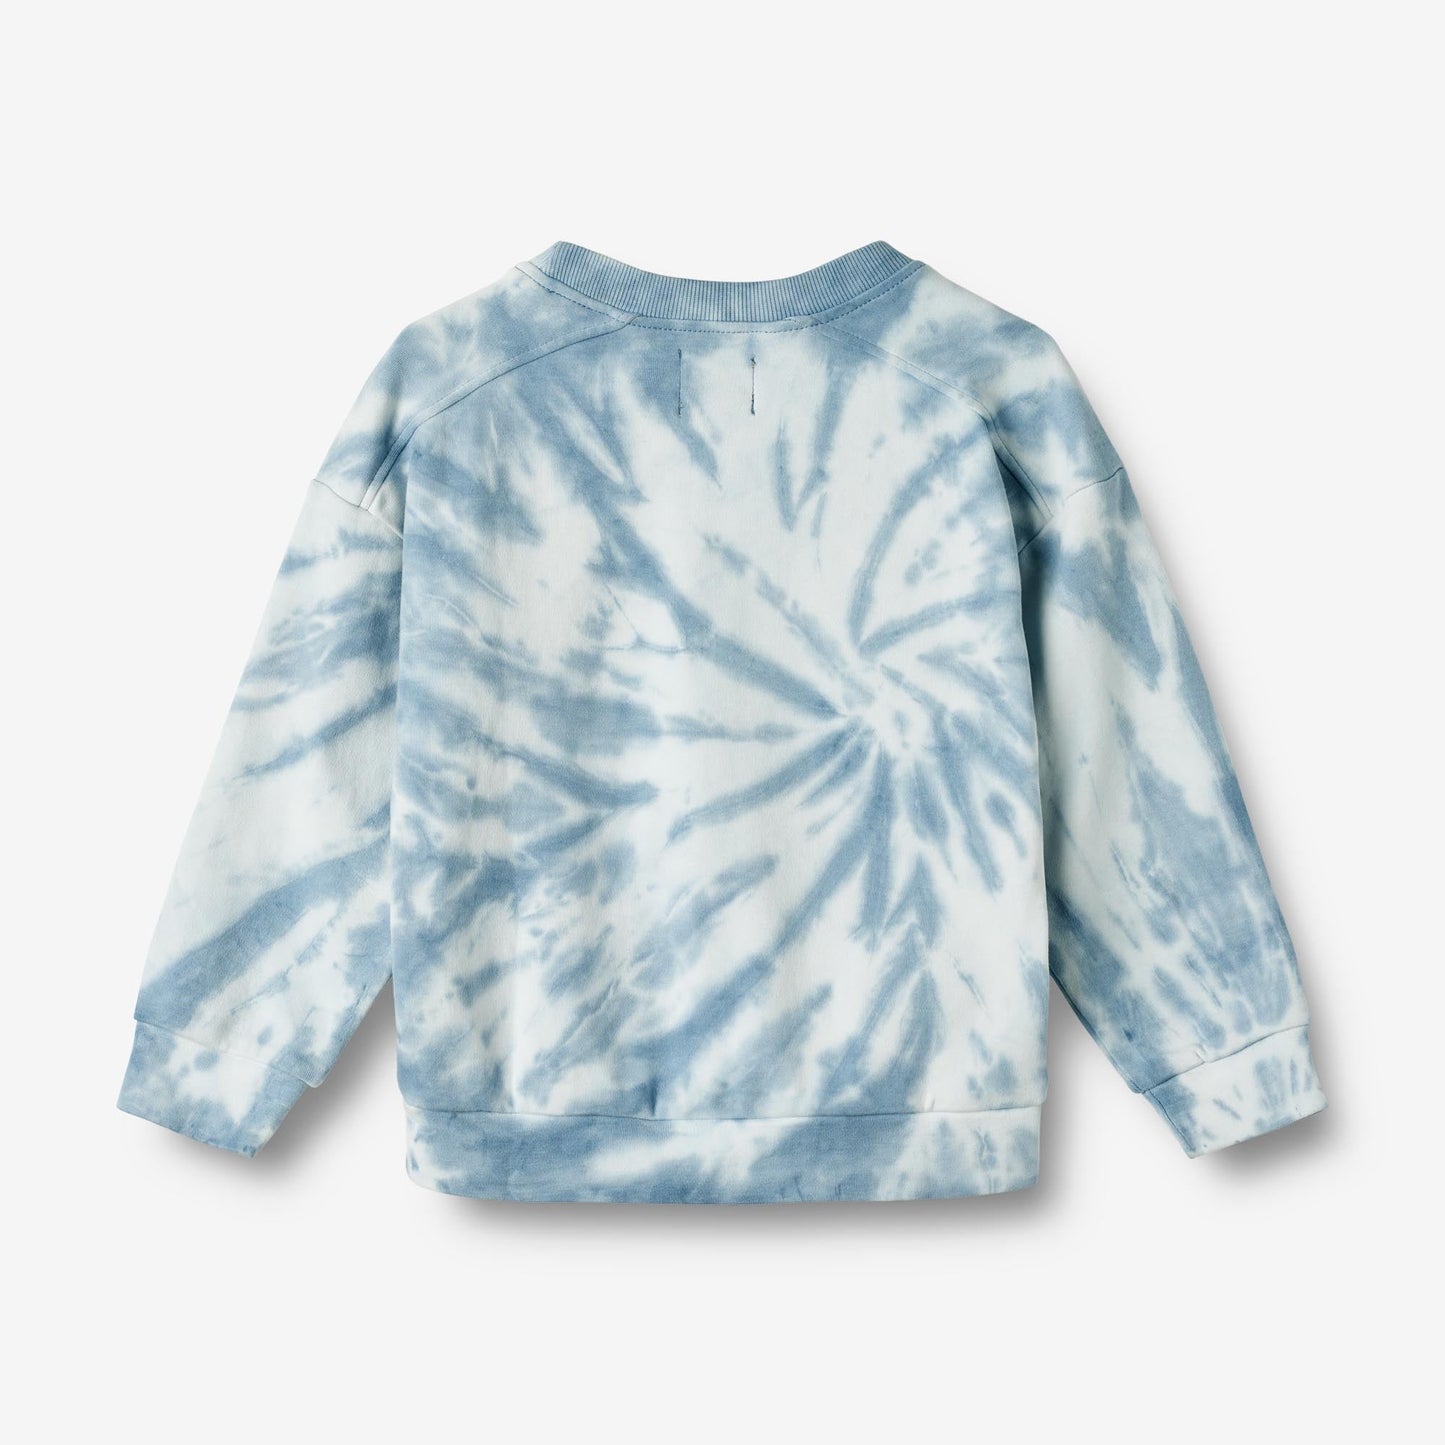 Wheat 'Peder' Children's Sweatshirt - Multi Blue